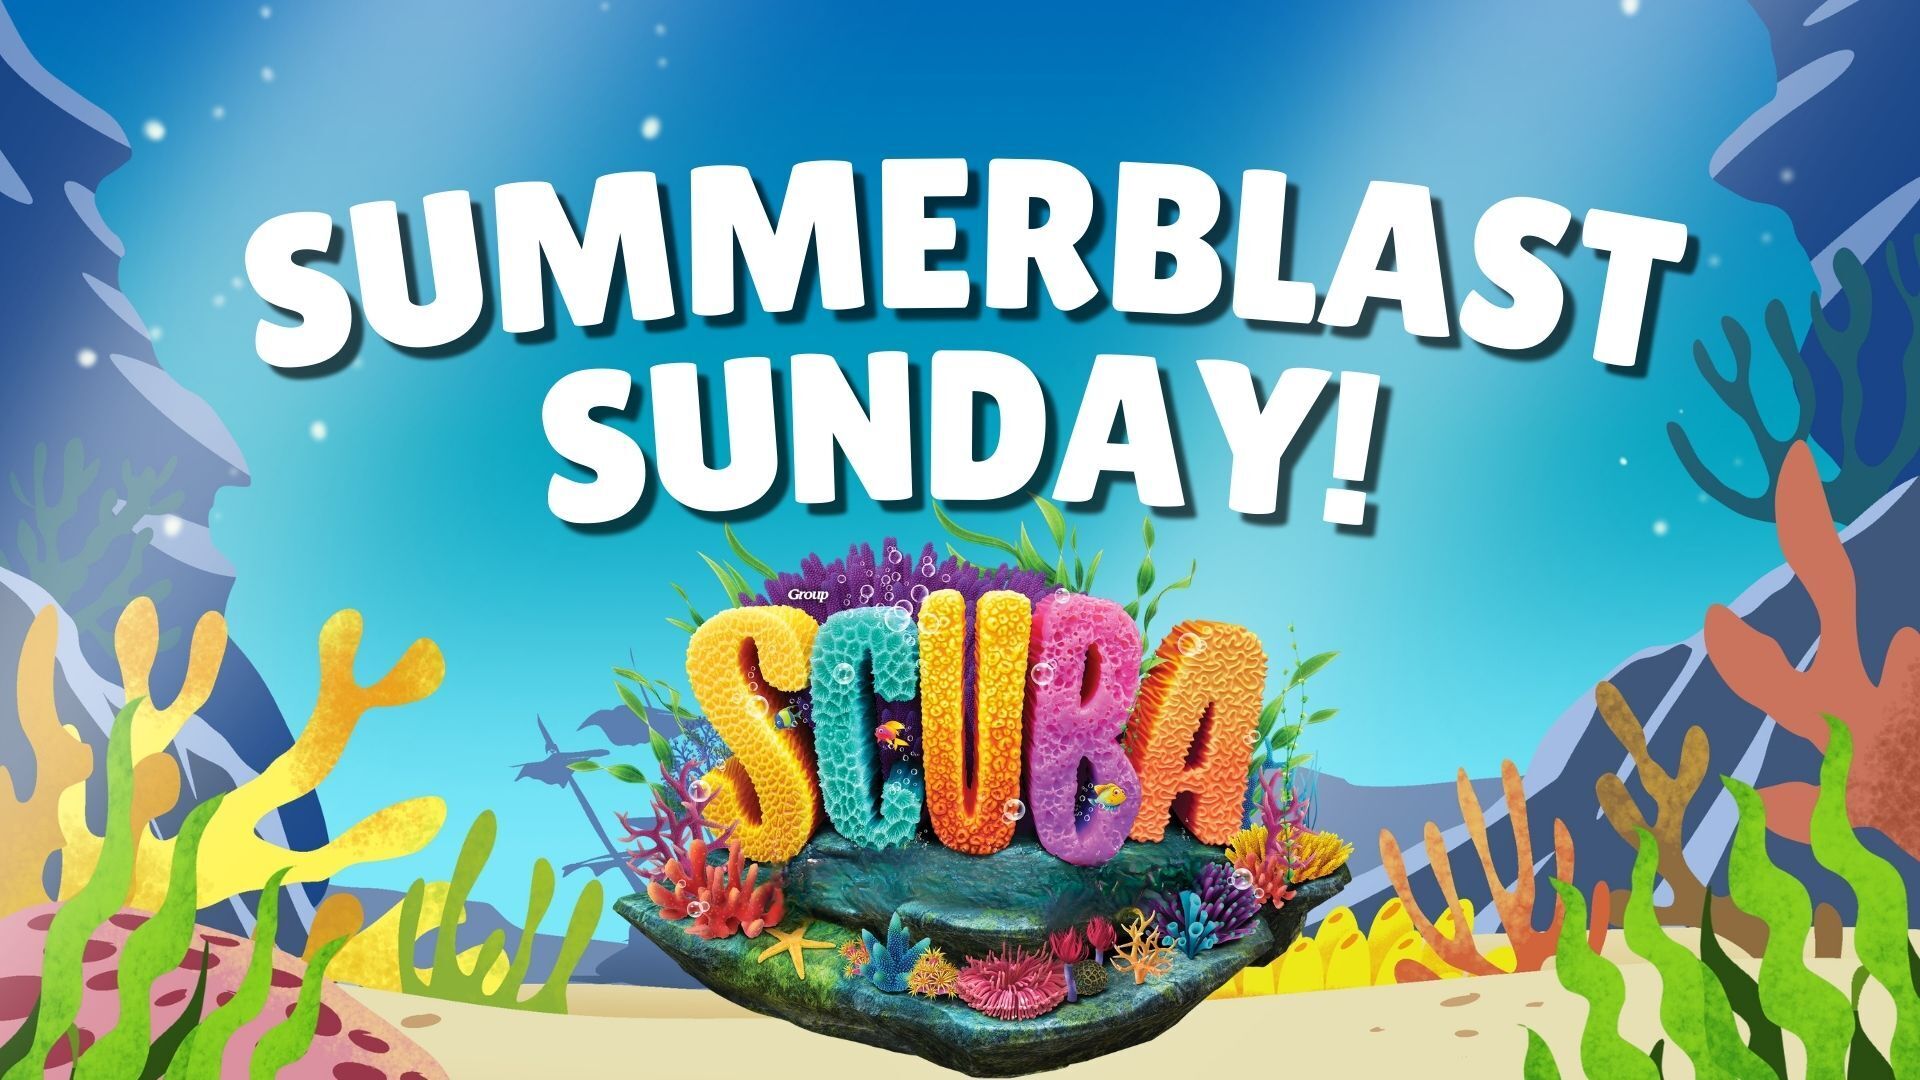 SummerBlast Sunday - Scuba